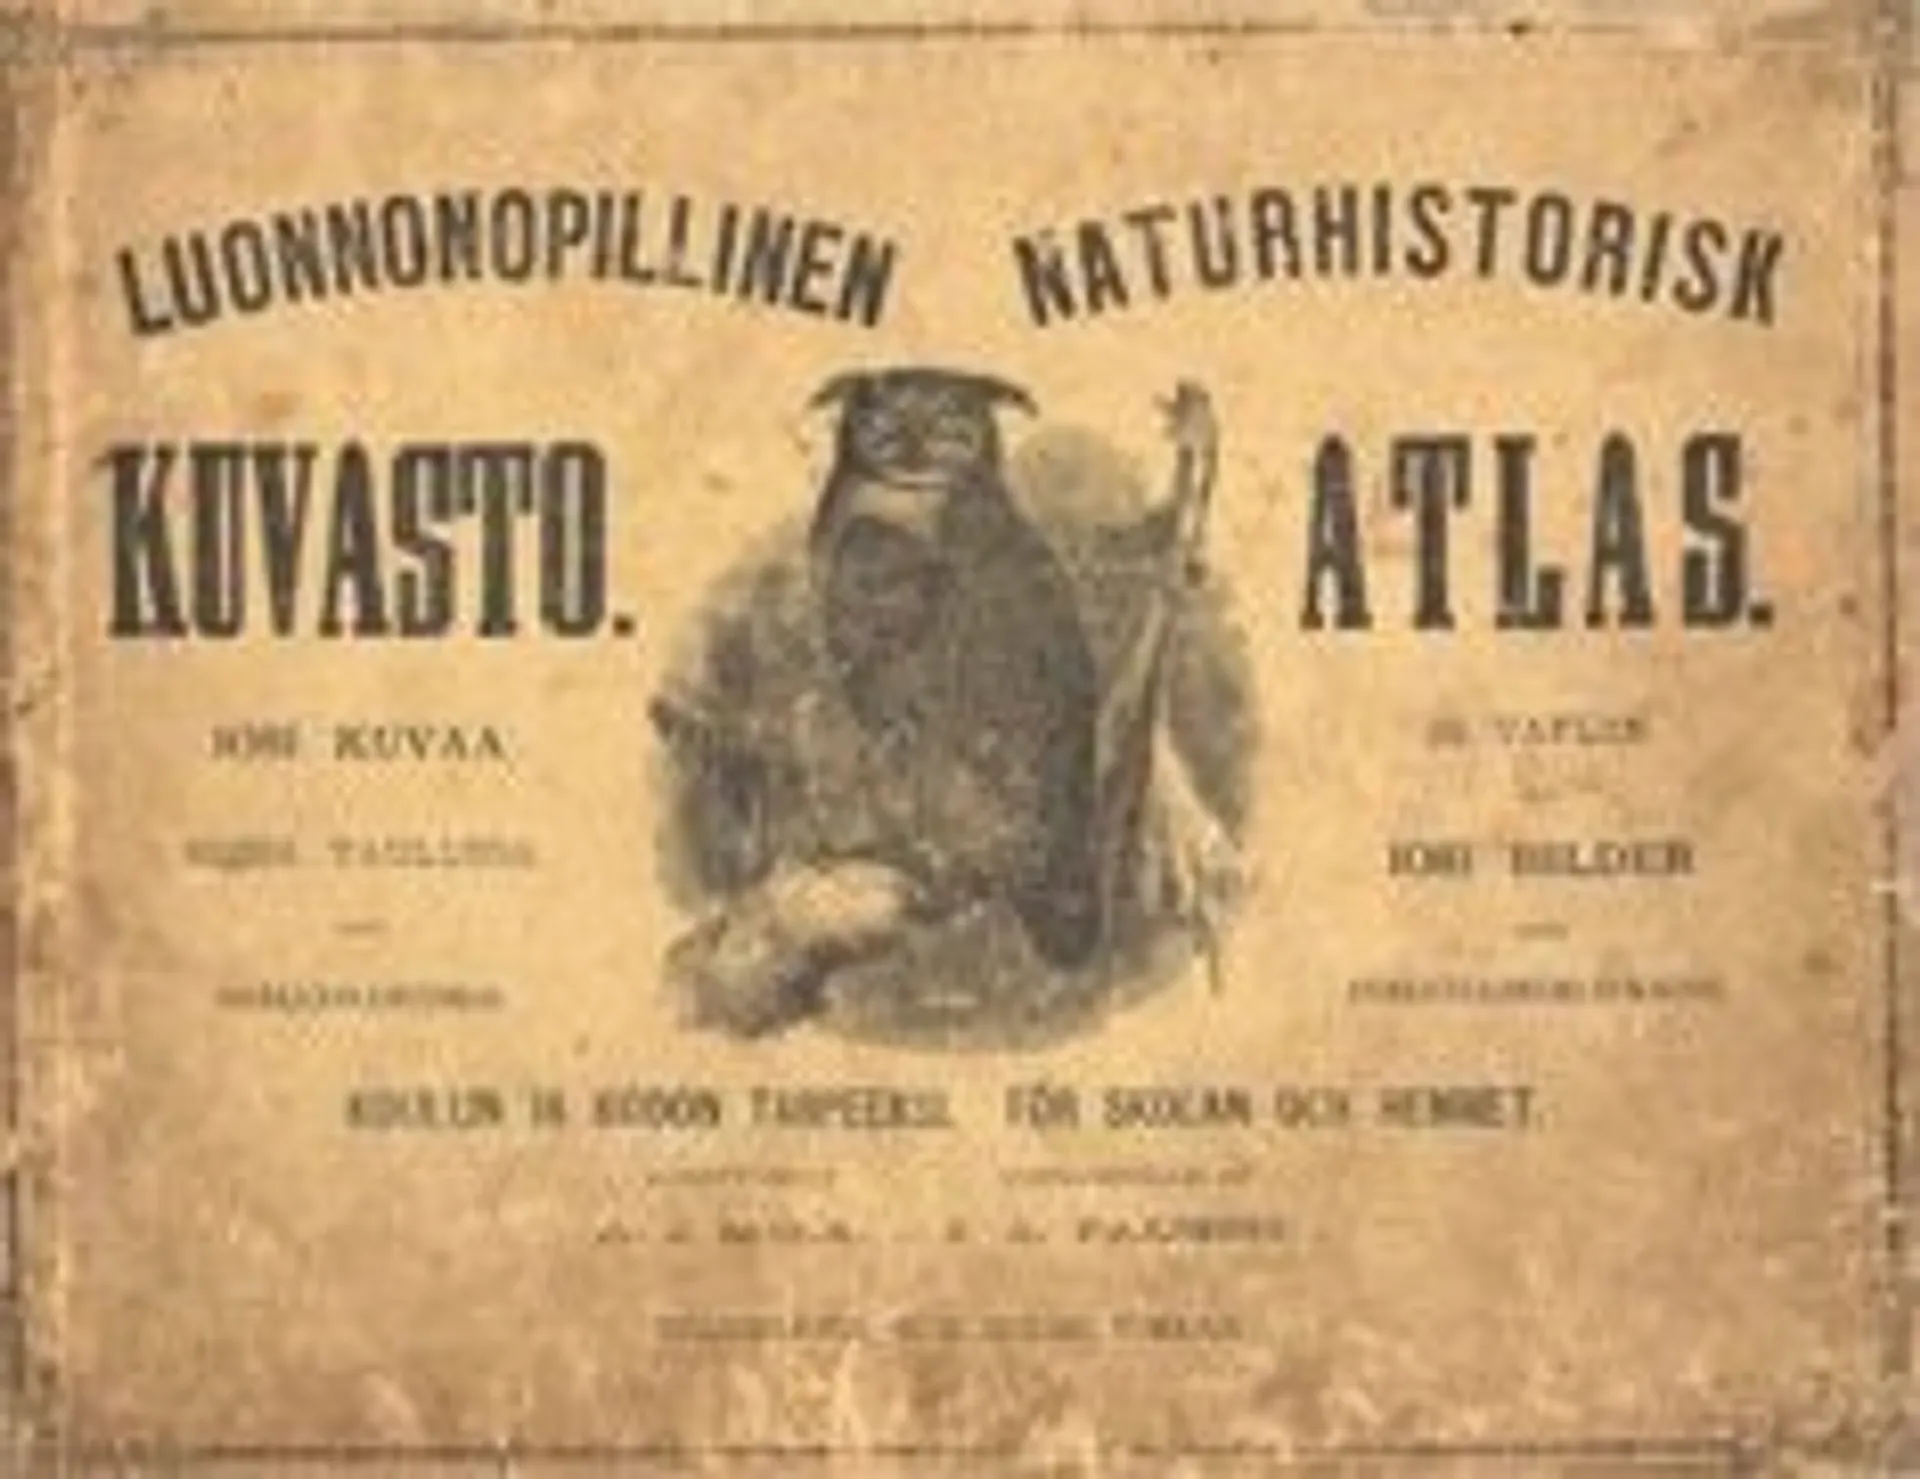 Mela, Luonnonopillinen kuvasto - Naturhistorisk atlas